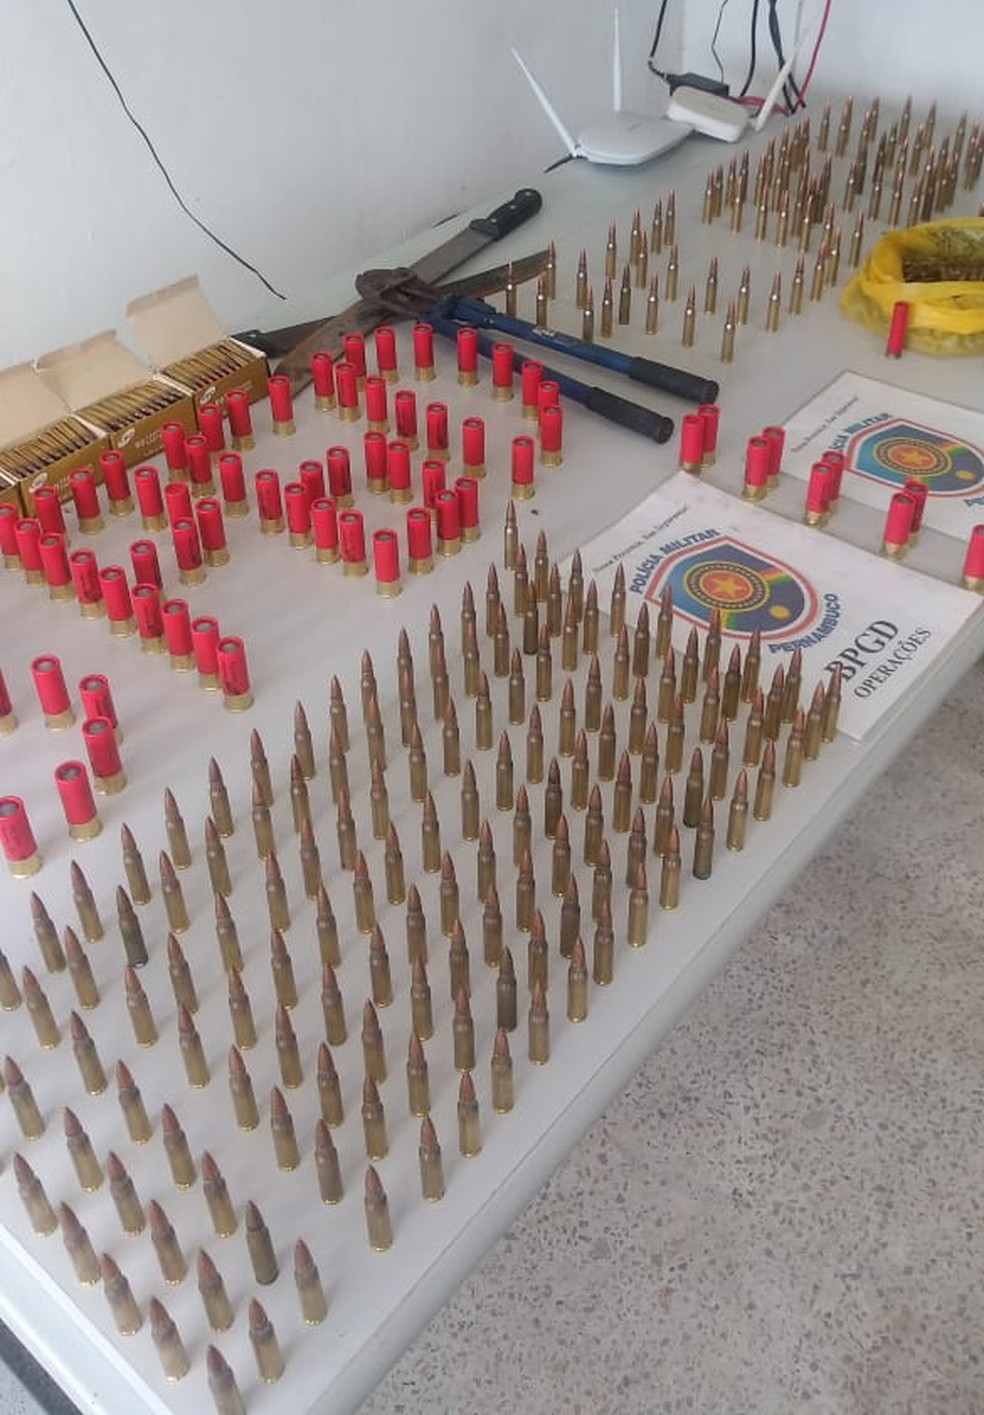 Munições, armas e ferramentas foram encontradas em Itaquitinga após tentativa criminosa — Foto: Polícia Civil/Divulgação